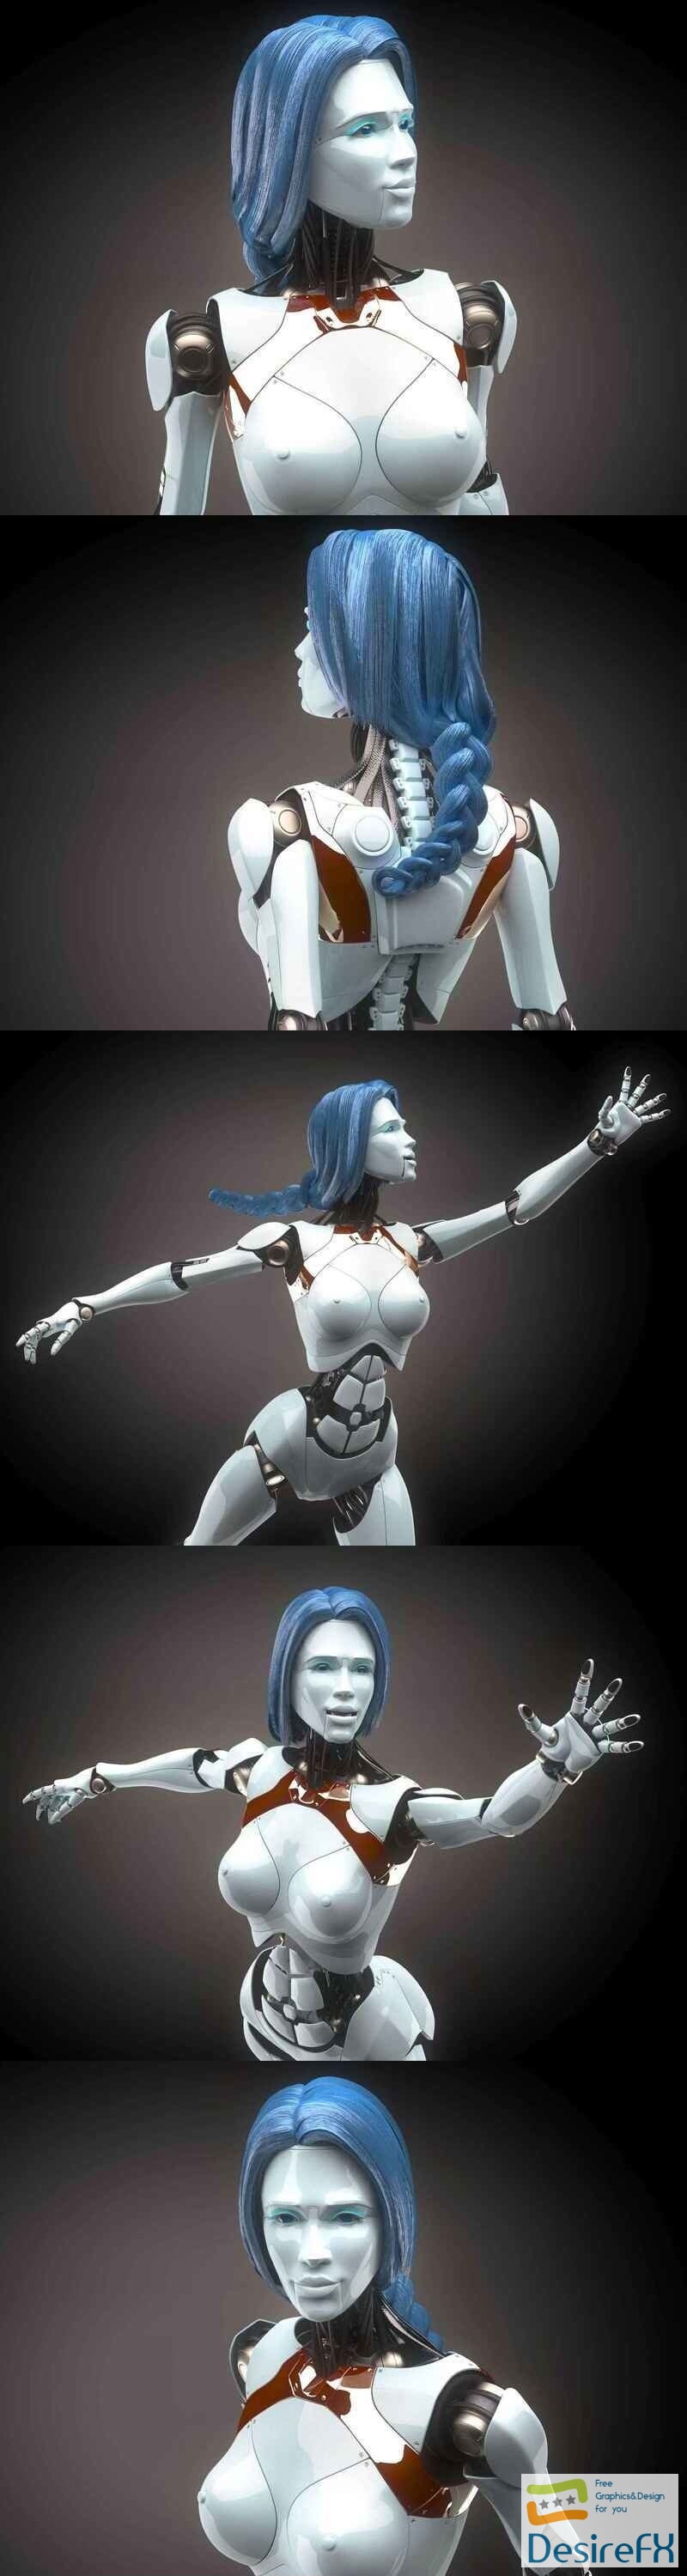 Robotic Woman Cyborg 3D Model